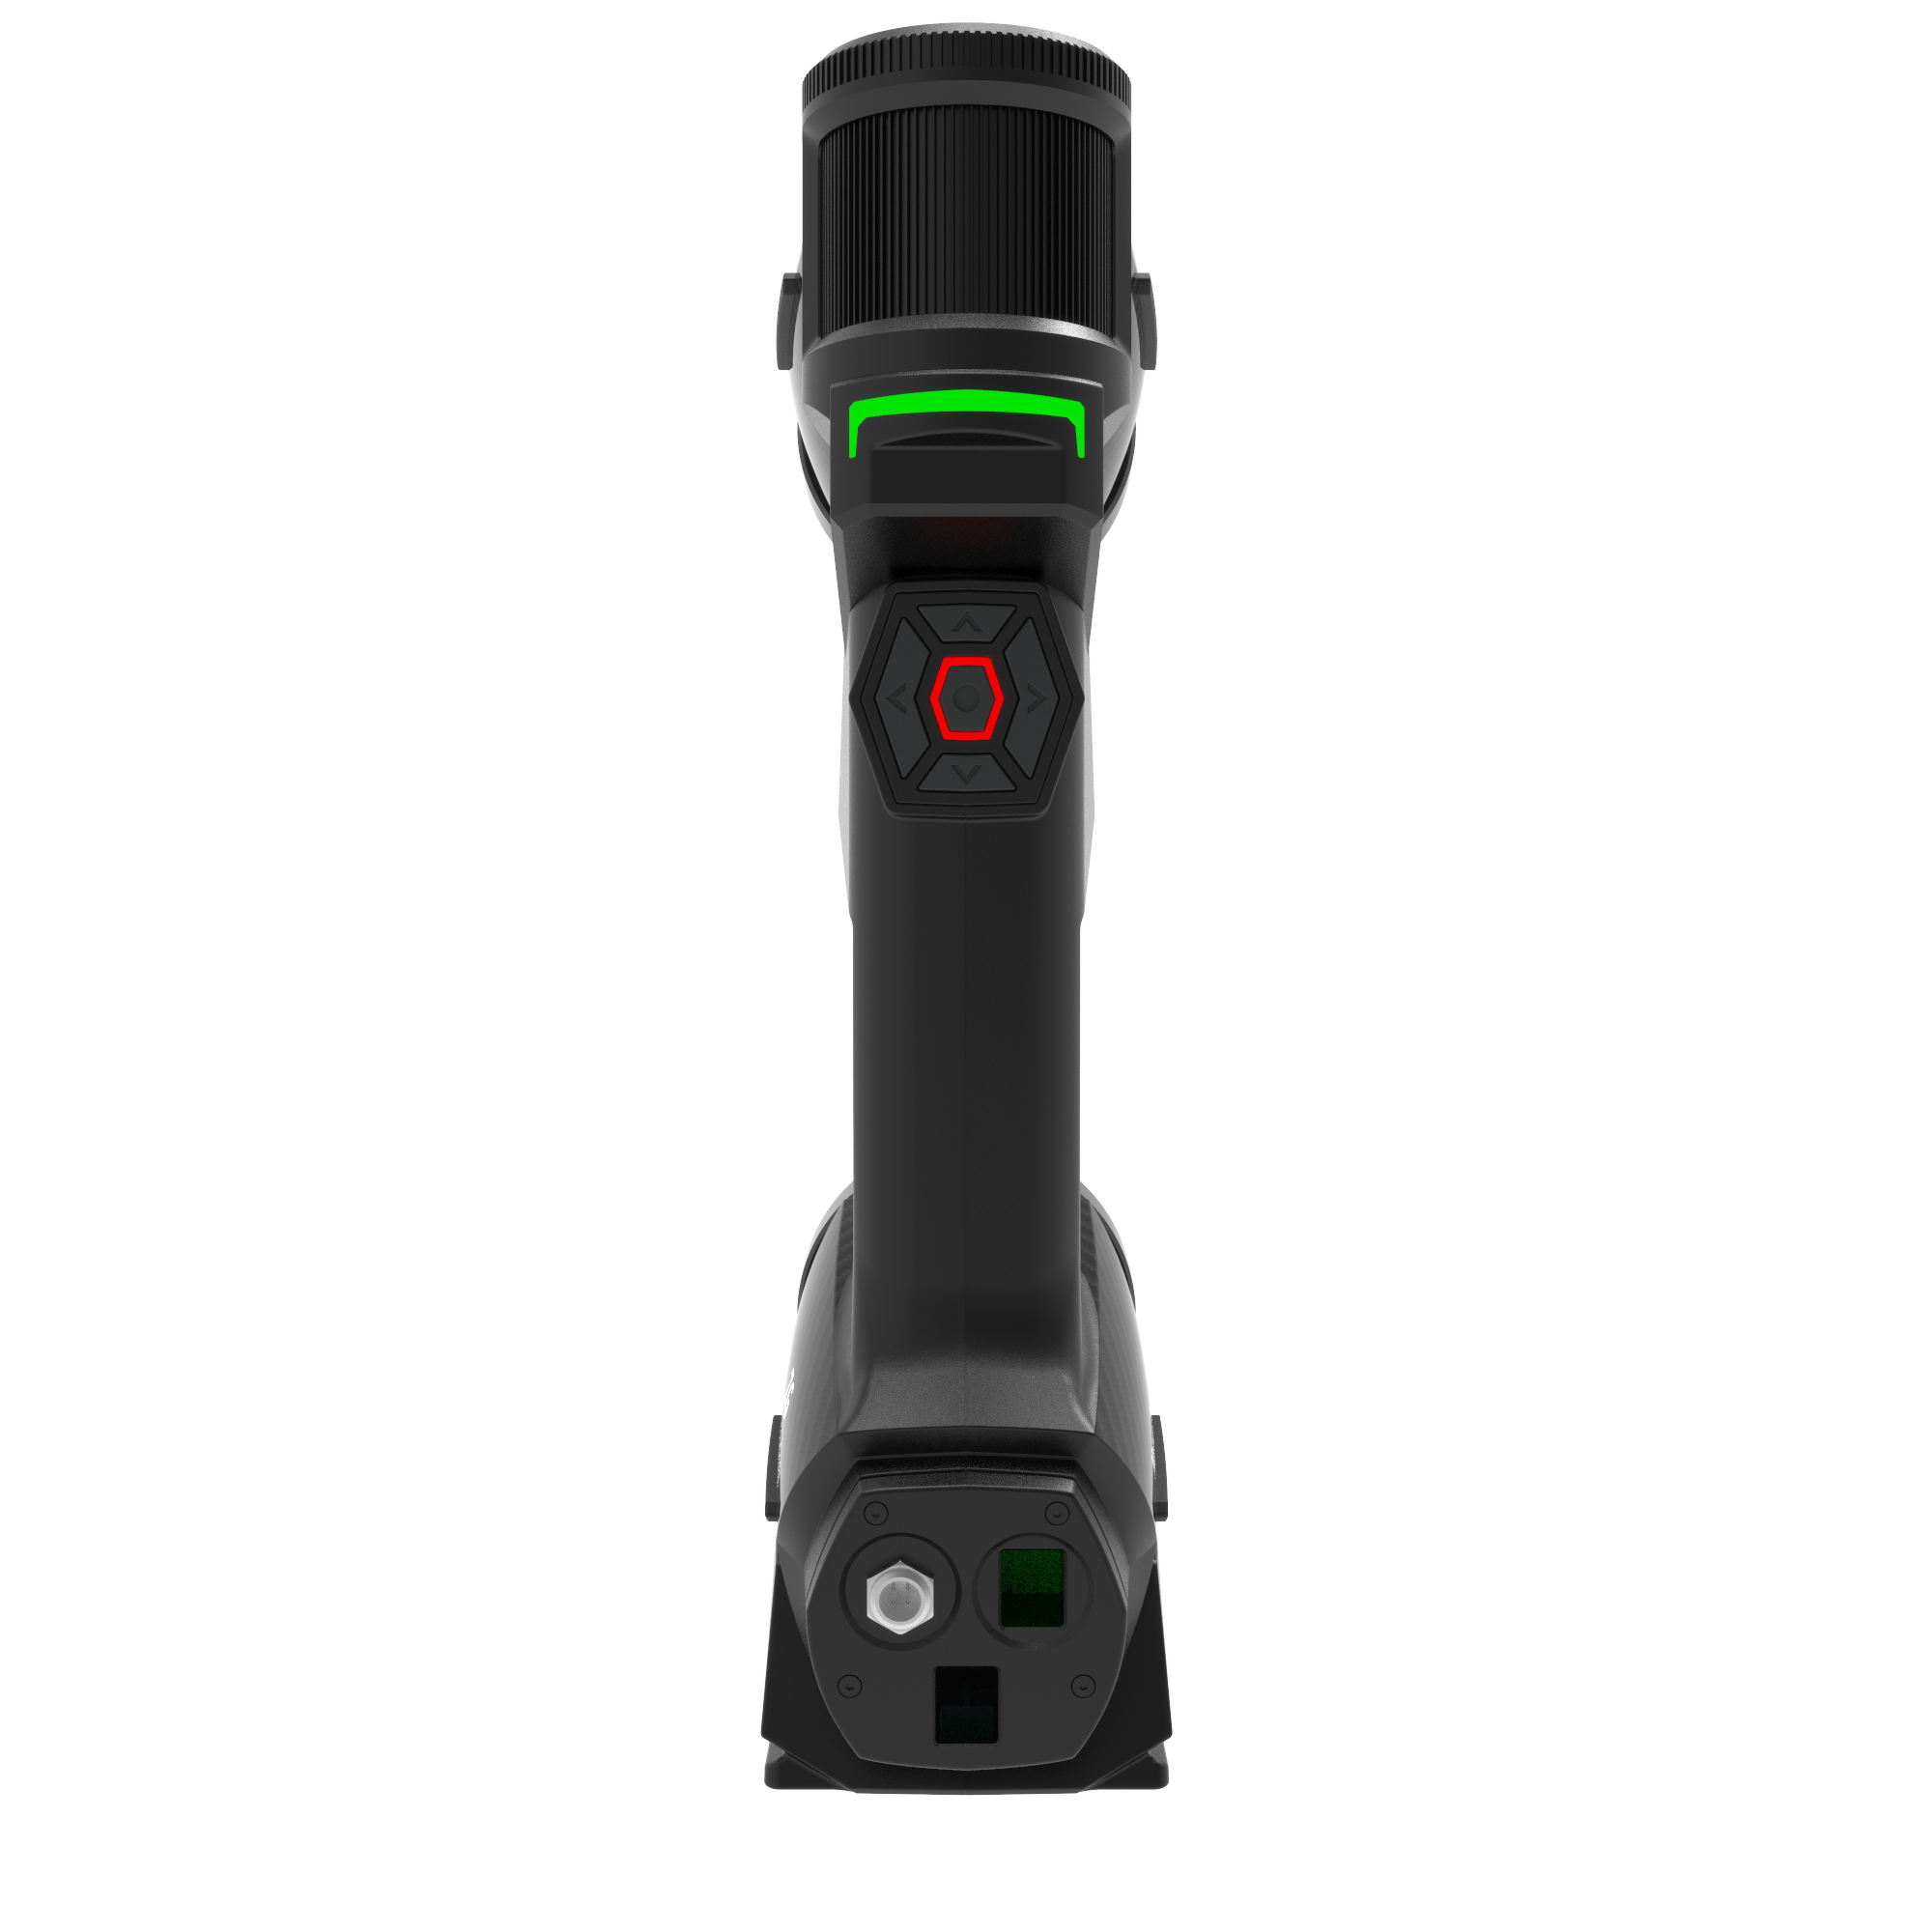 MarvelScan Tracker Free Marker Kostenloser professioneller 3D-Laser-Handscanner